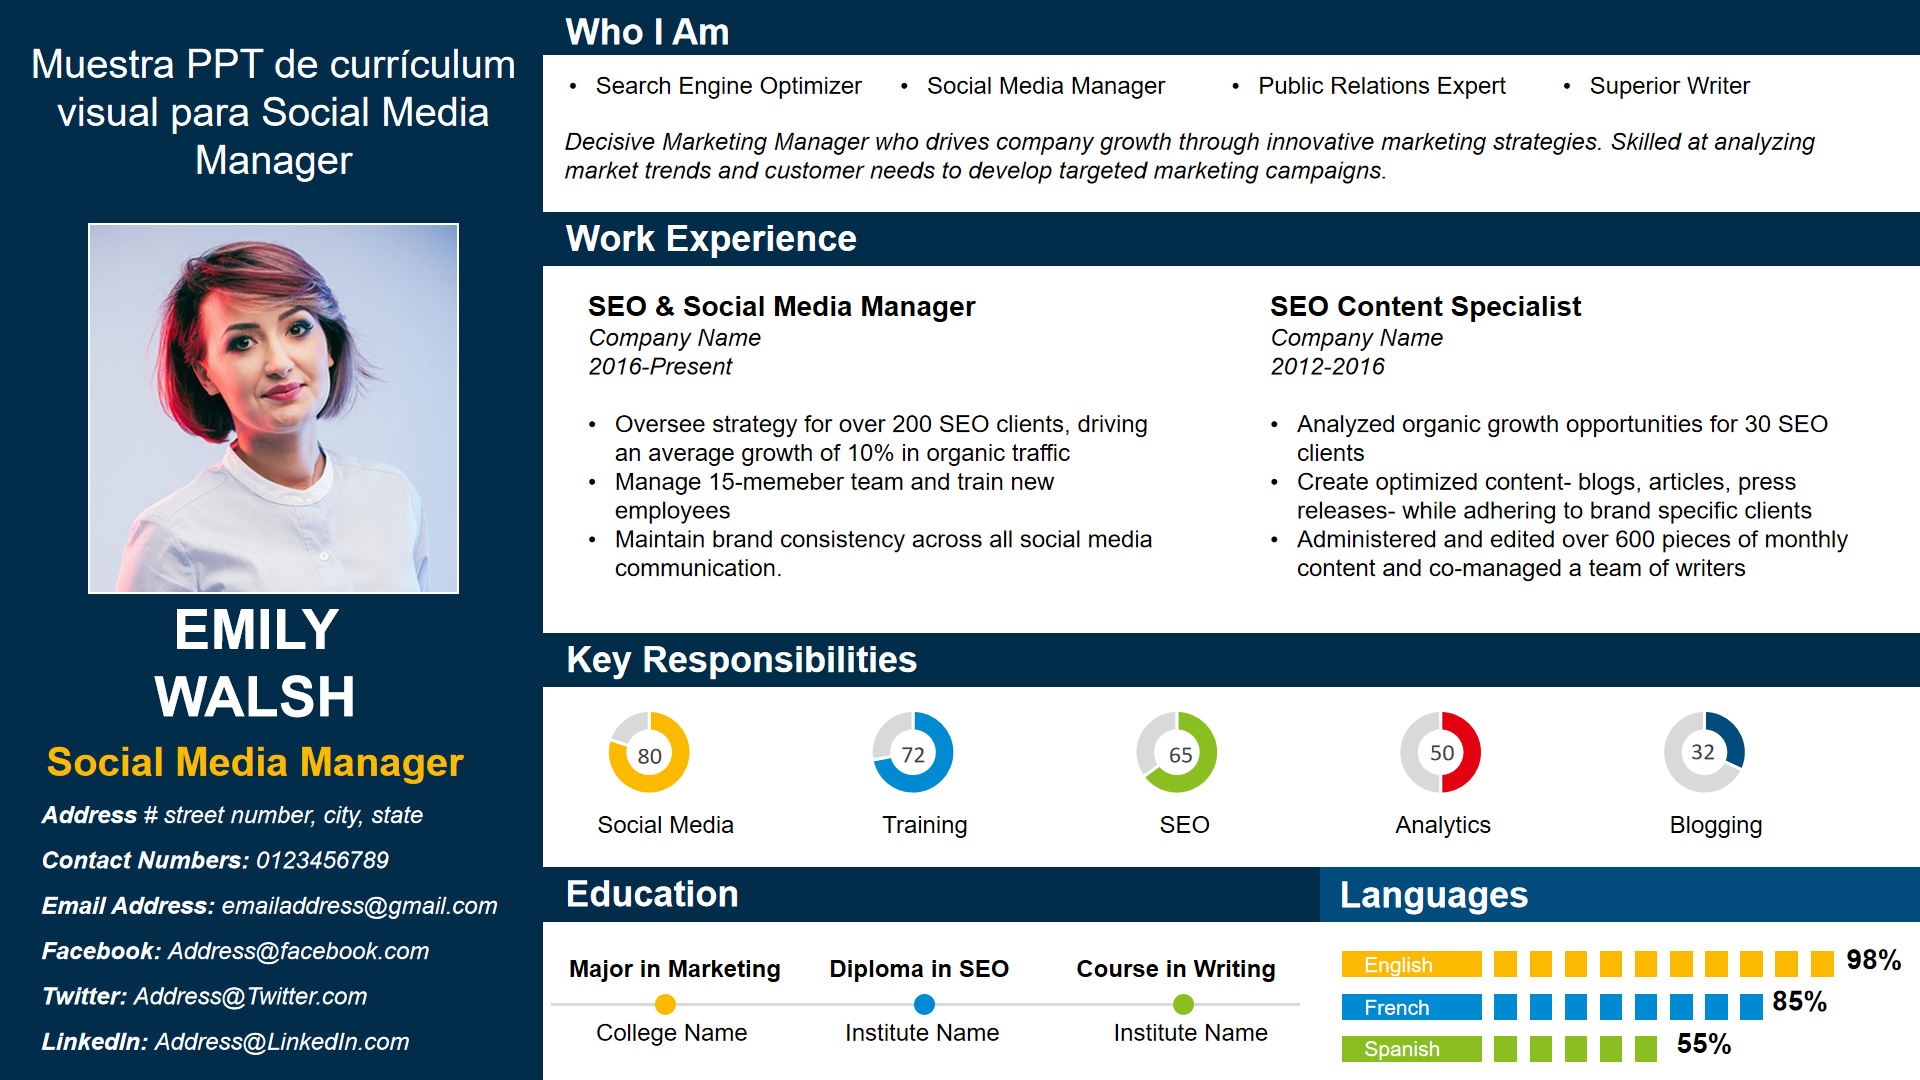 Muestra PPT de currículum visual para Social Media Manager